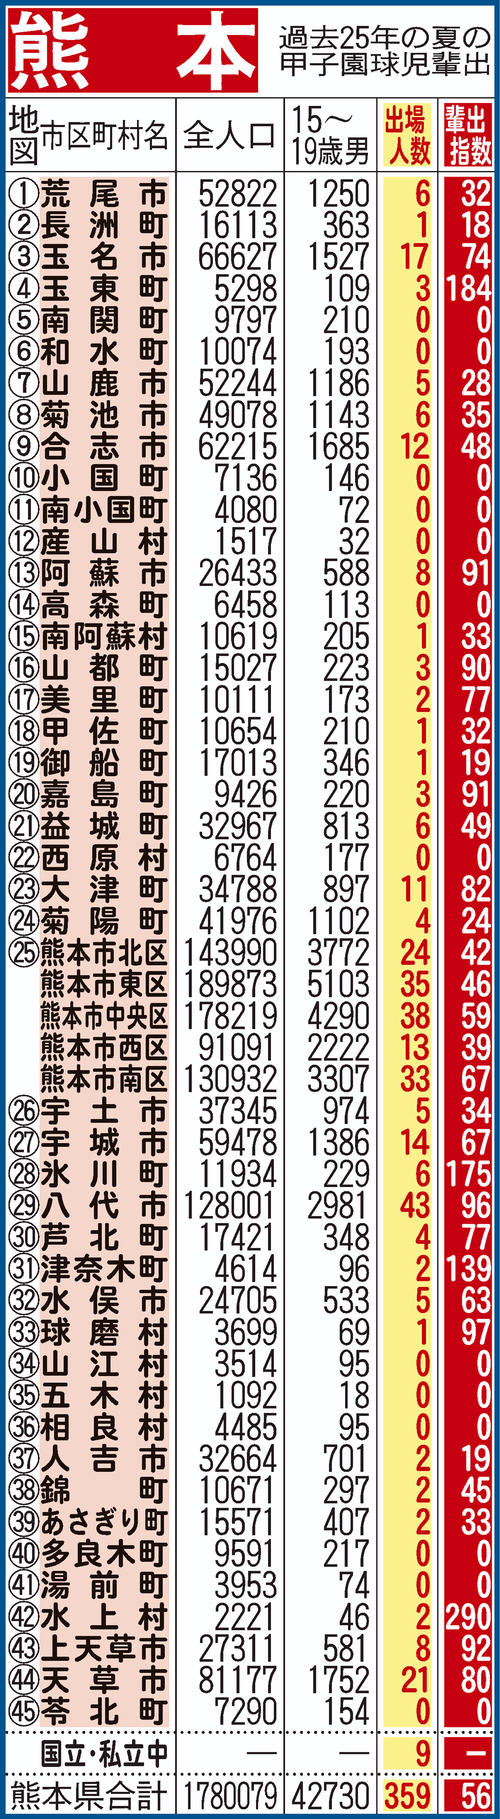 過去25年間における熊本県地域別の甲子園輩出指数